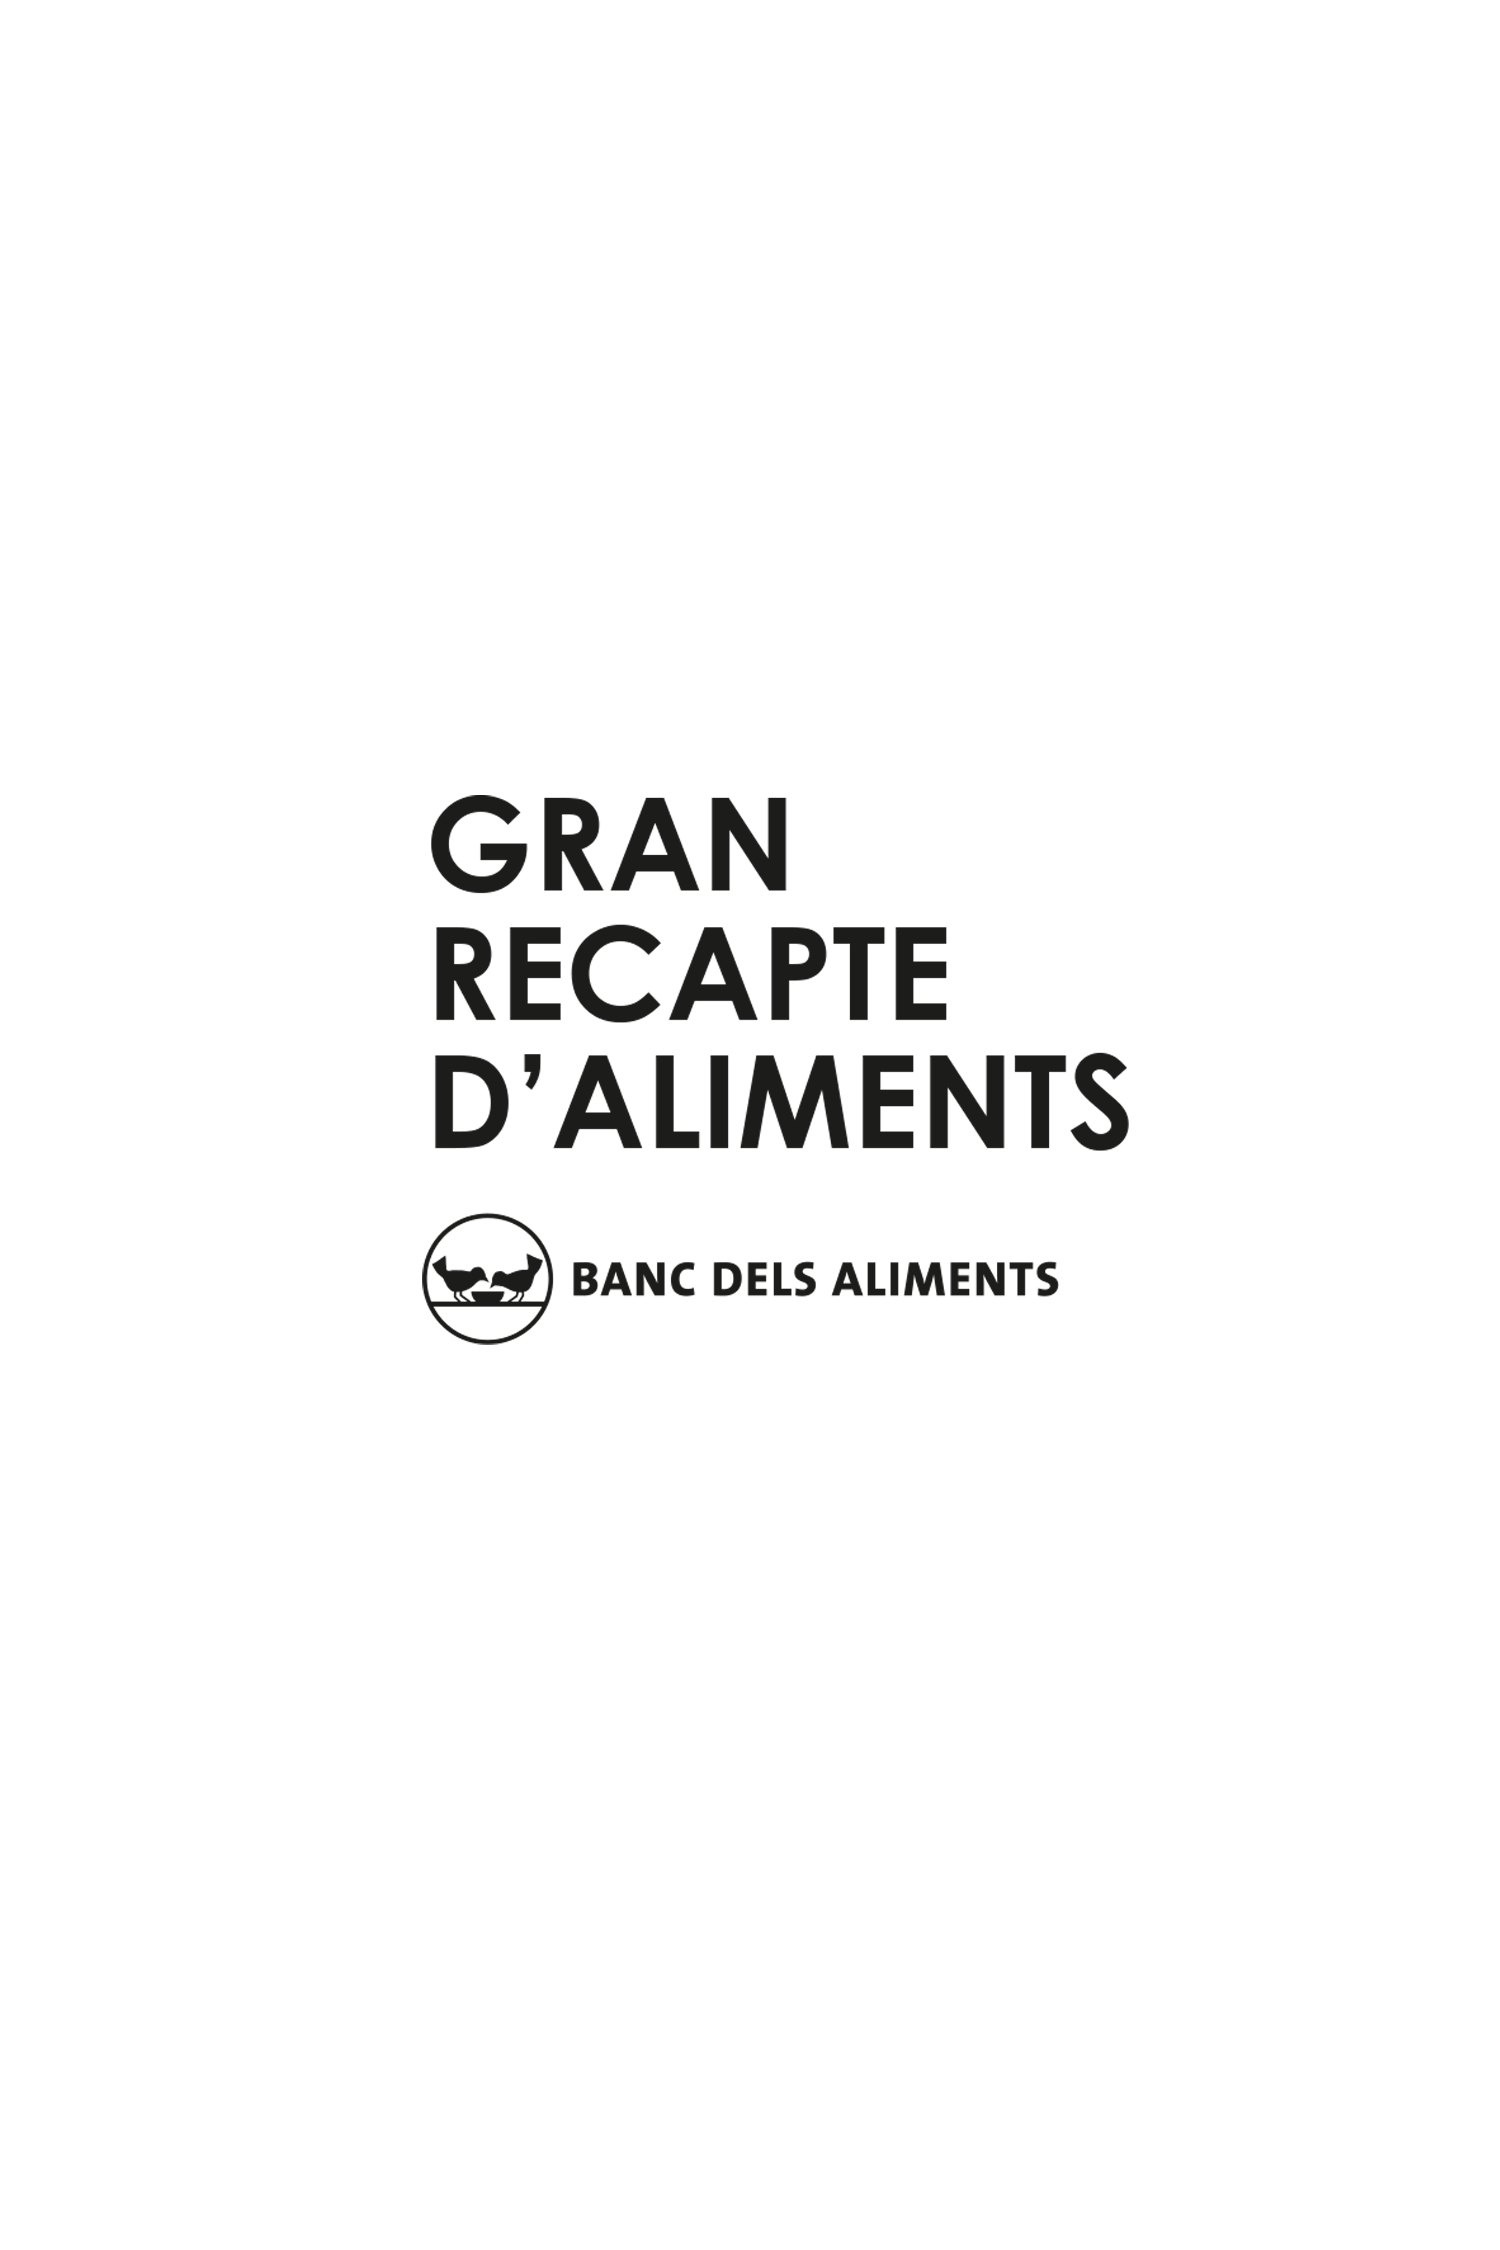 GRAN RECAPTE D'ALIMENTS